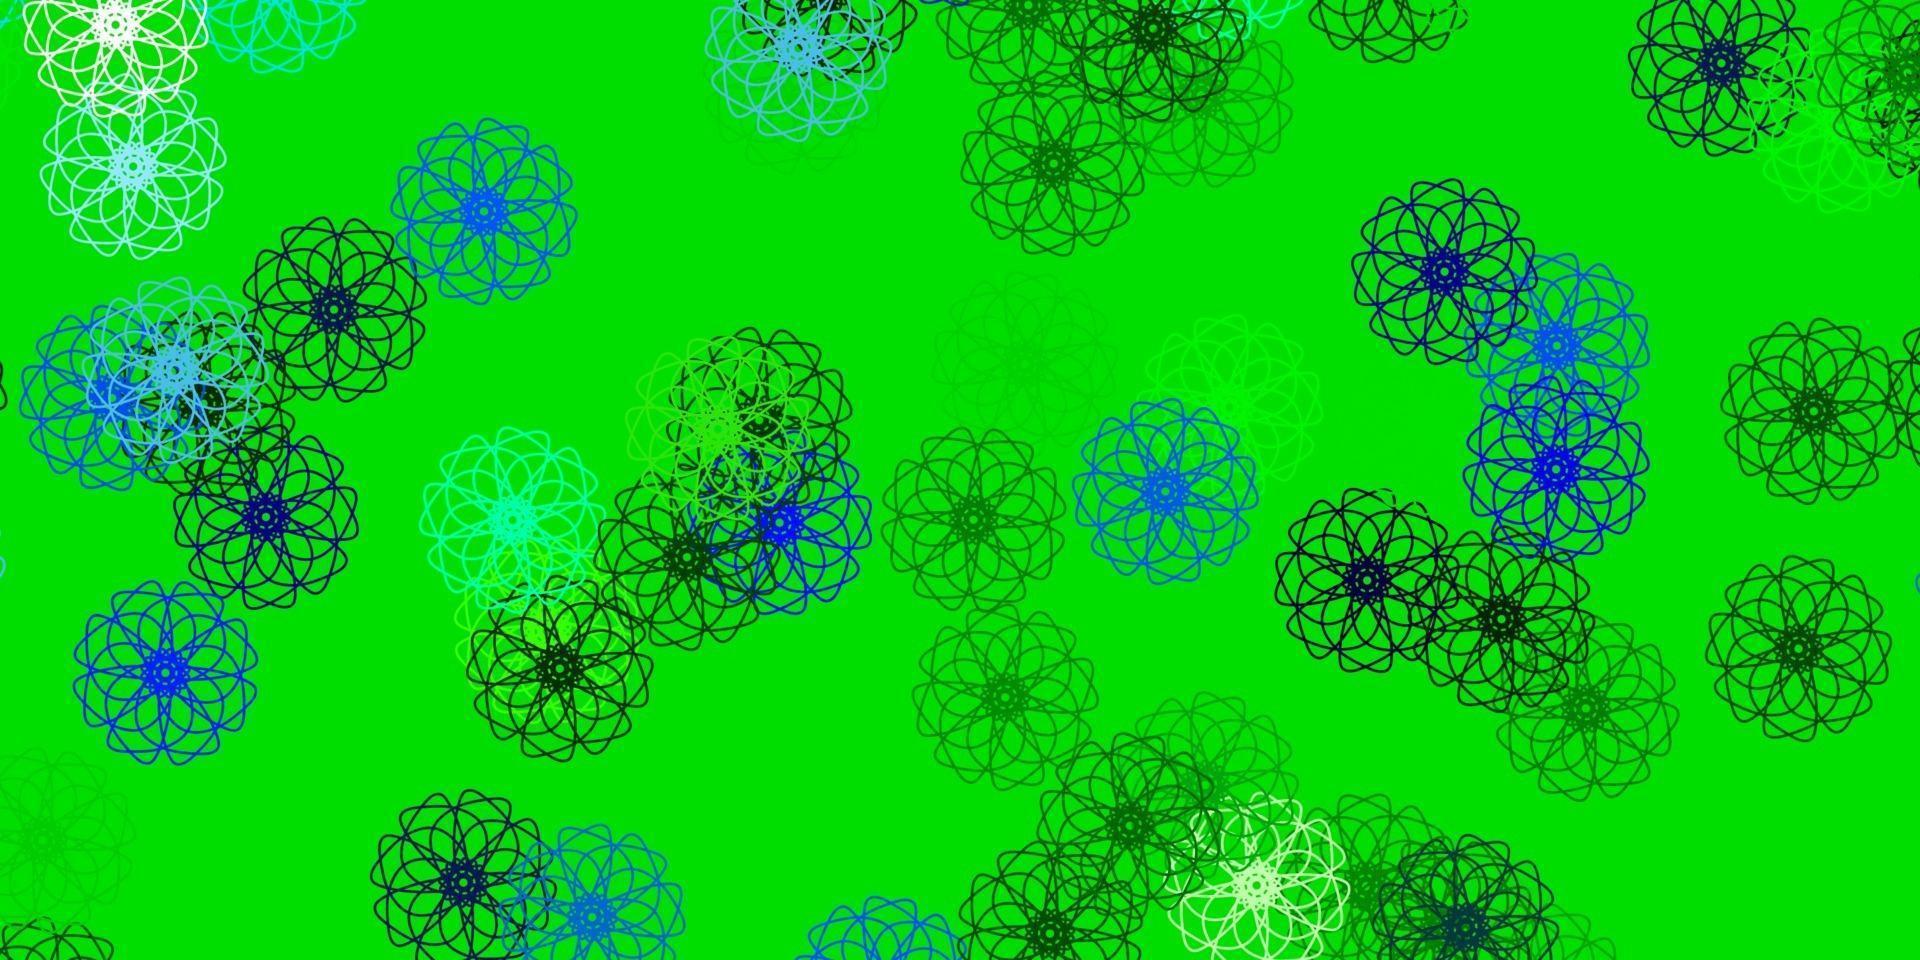 textura de doodle de vector azul claro, verde con flores.